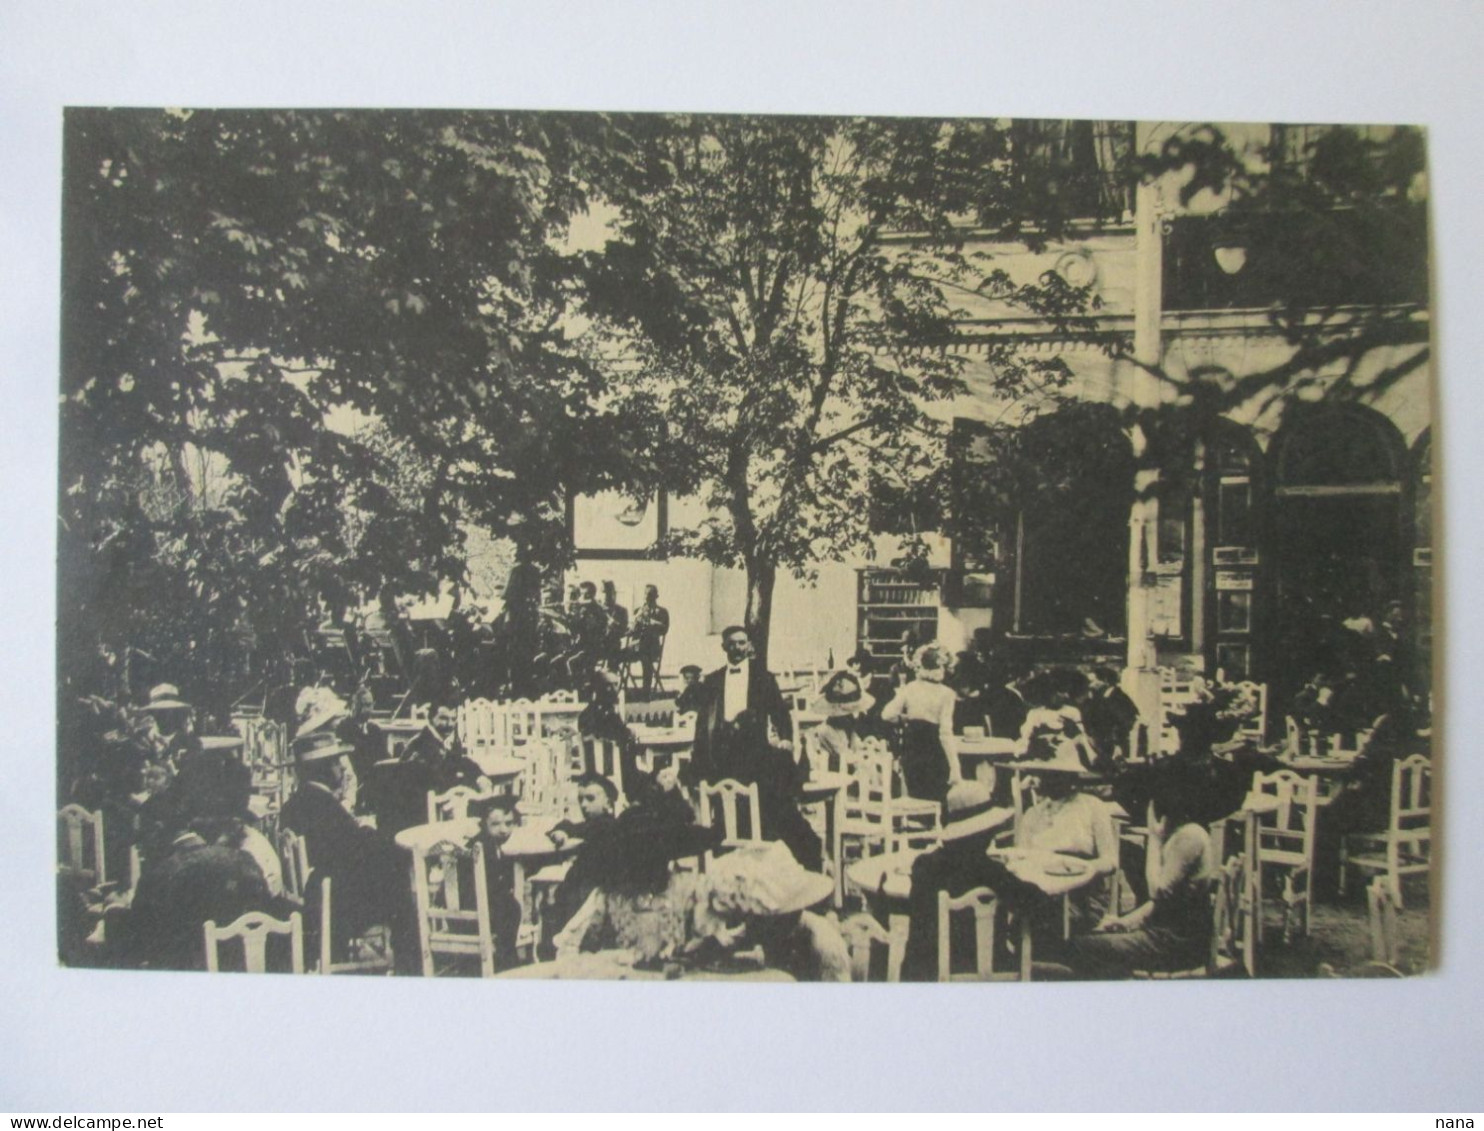 Romania-Sibiu:La Confiserie Dans Le Parc C.p.vers 1920/Confectionery In The Park Unused Postcard 1920s - Rumänien